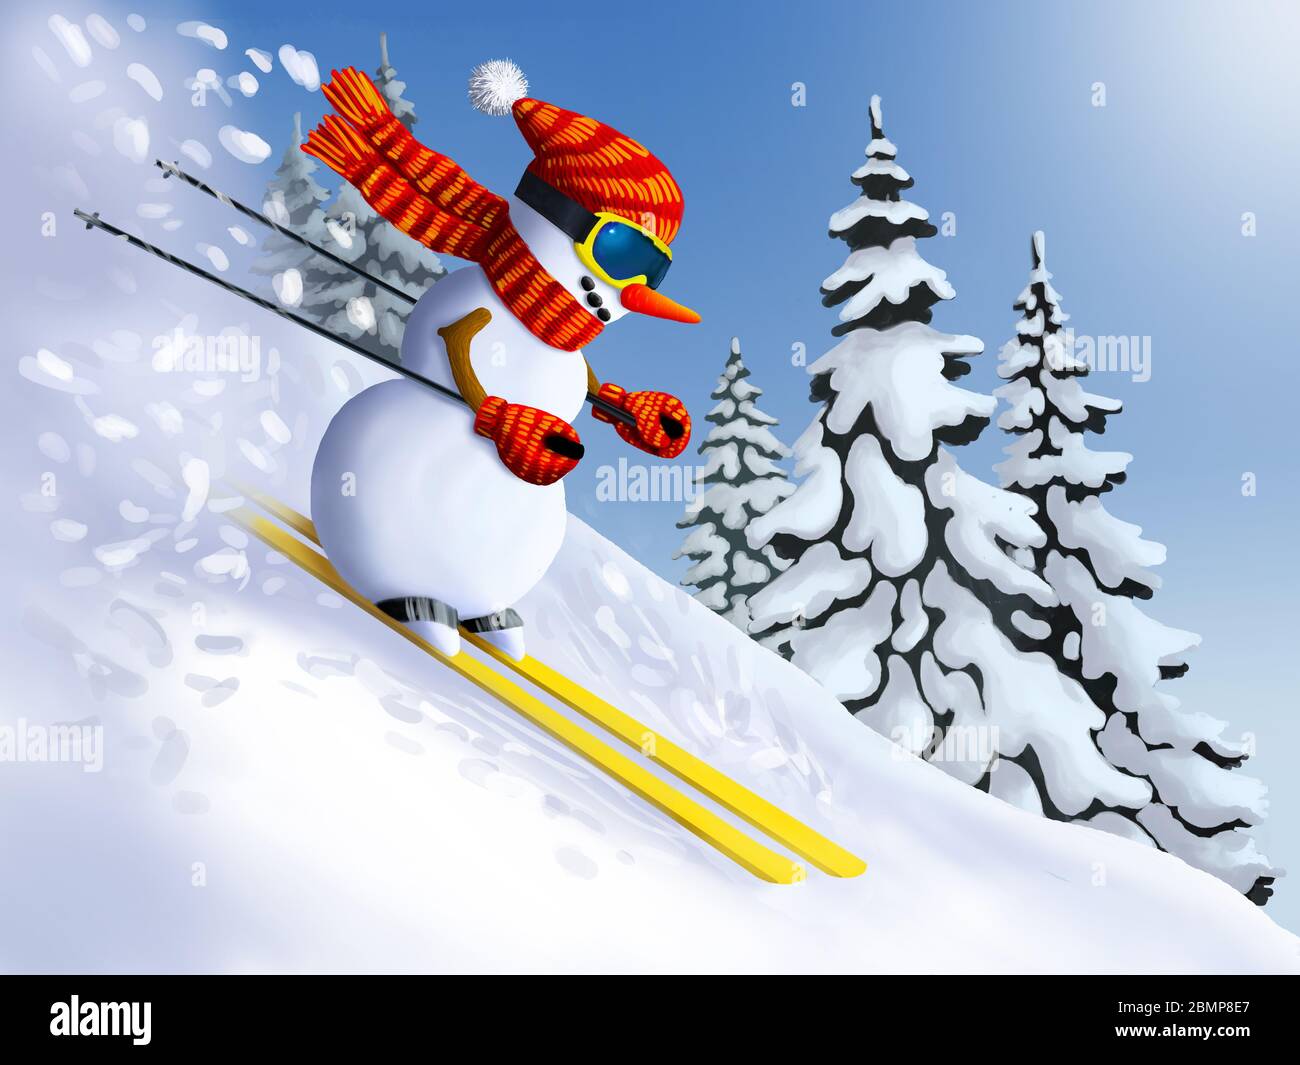 Schneemann Skifahrer extrem bergab vom Berg. Winter Holidays Weihnachten und Neujahr Illustrationen. Stockfoto